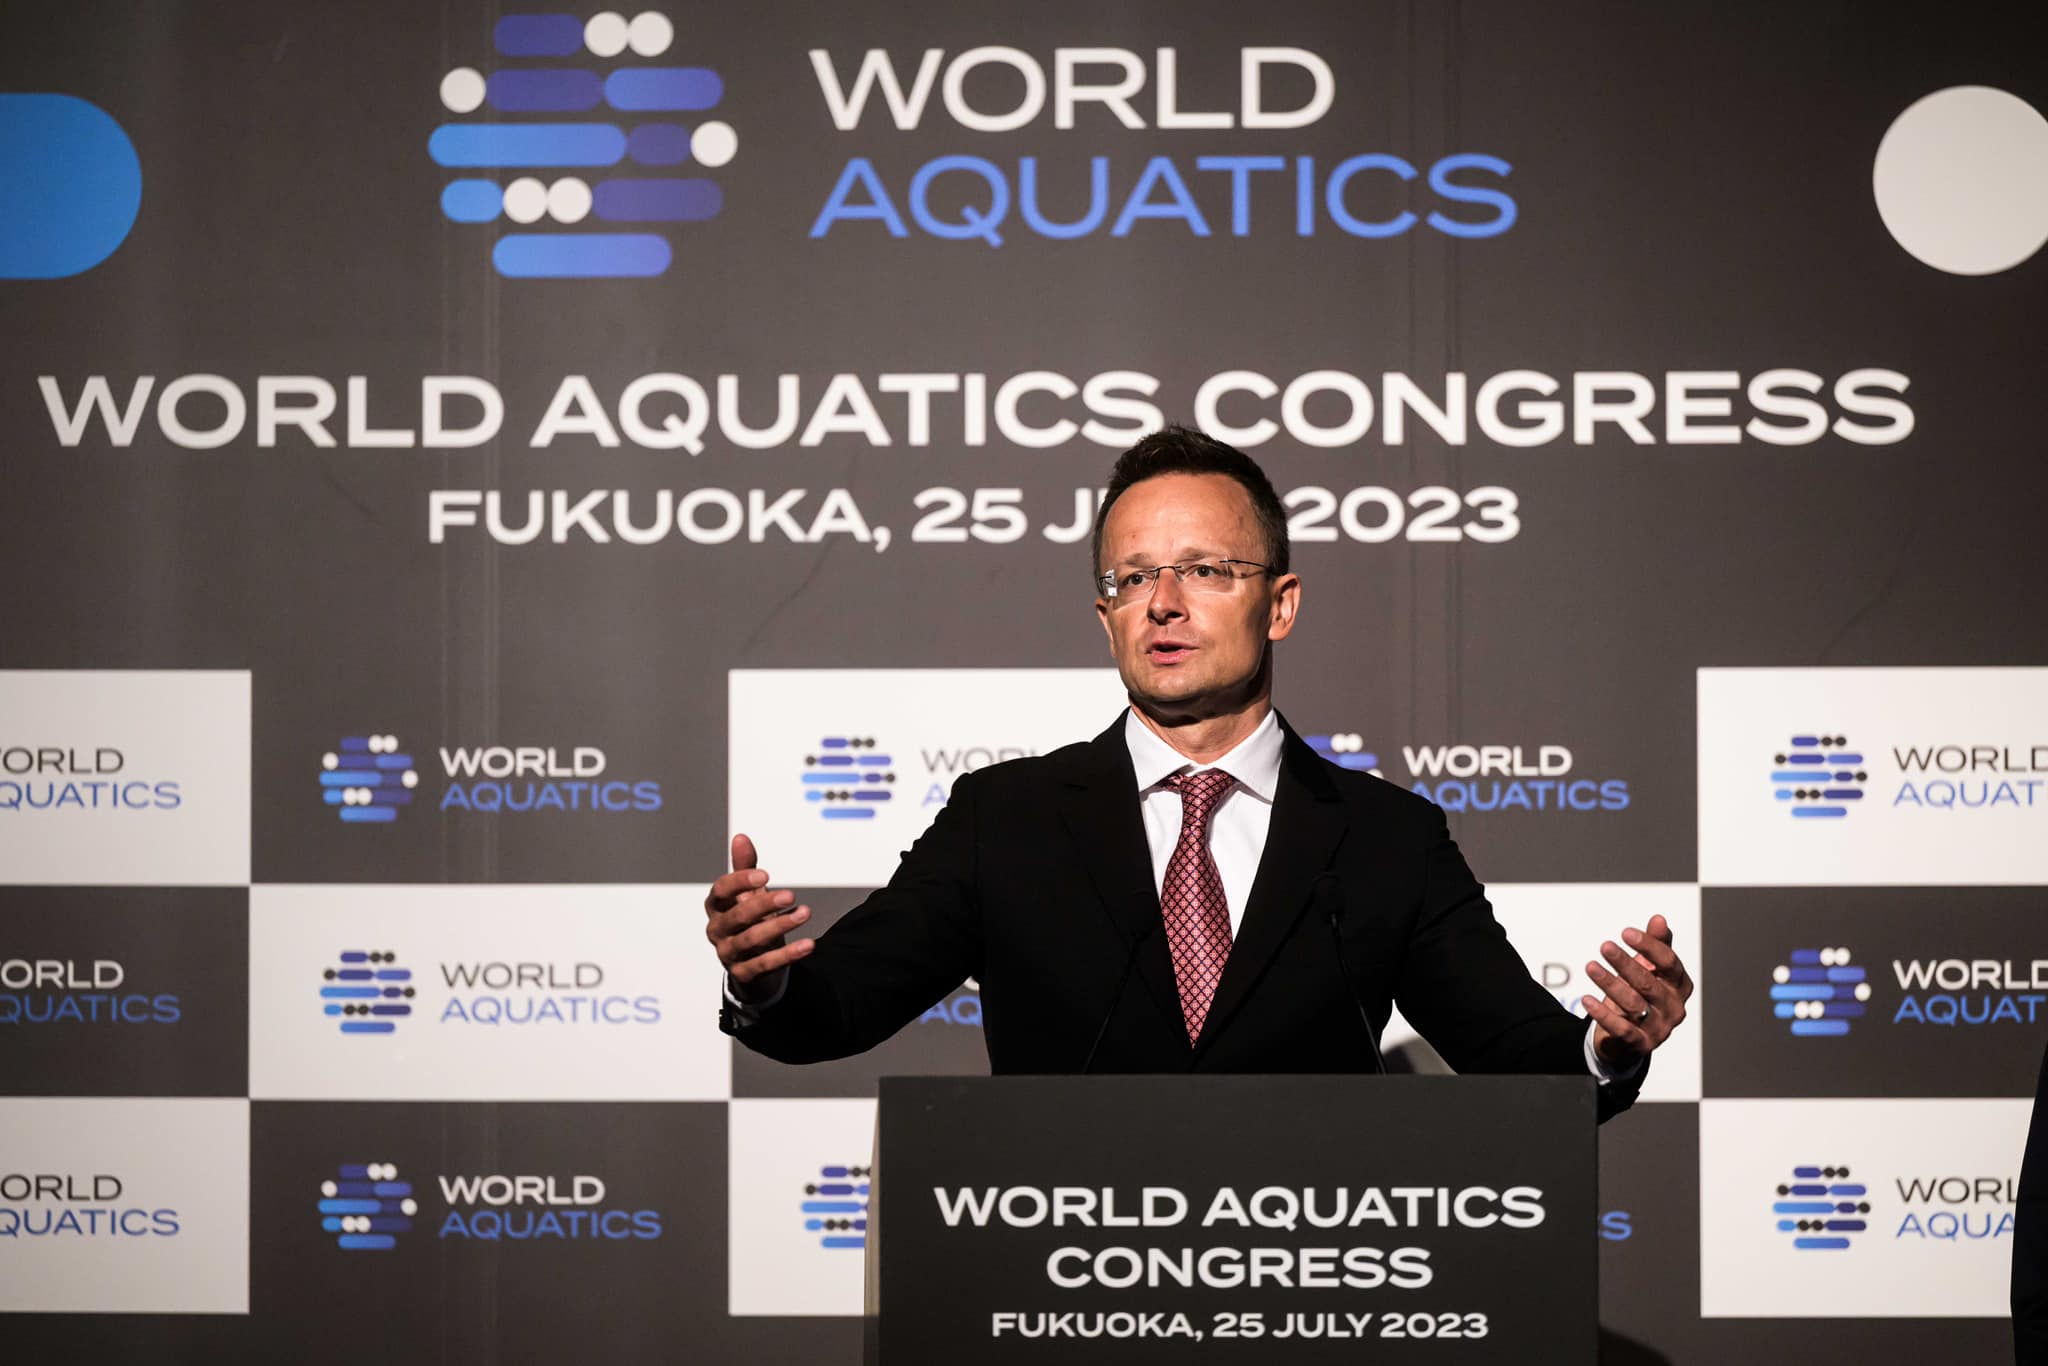 Kongress des Internationalen Schwimmverbands genehmigt die Verlegung des Sitzes nach Budapest